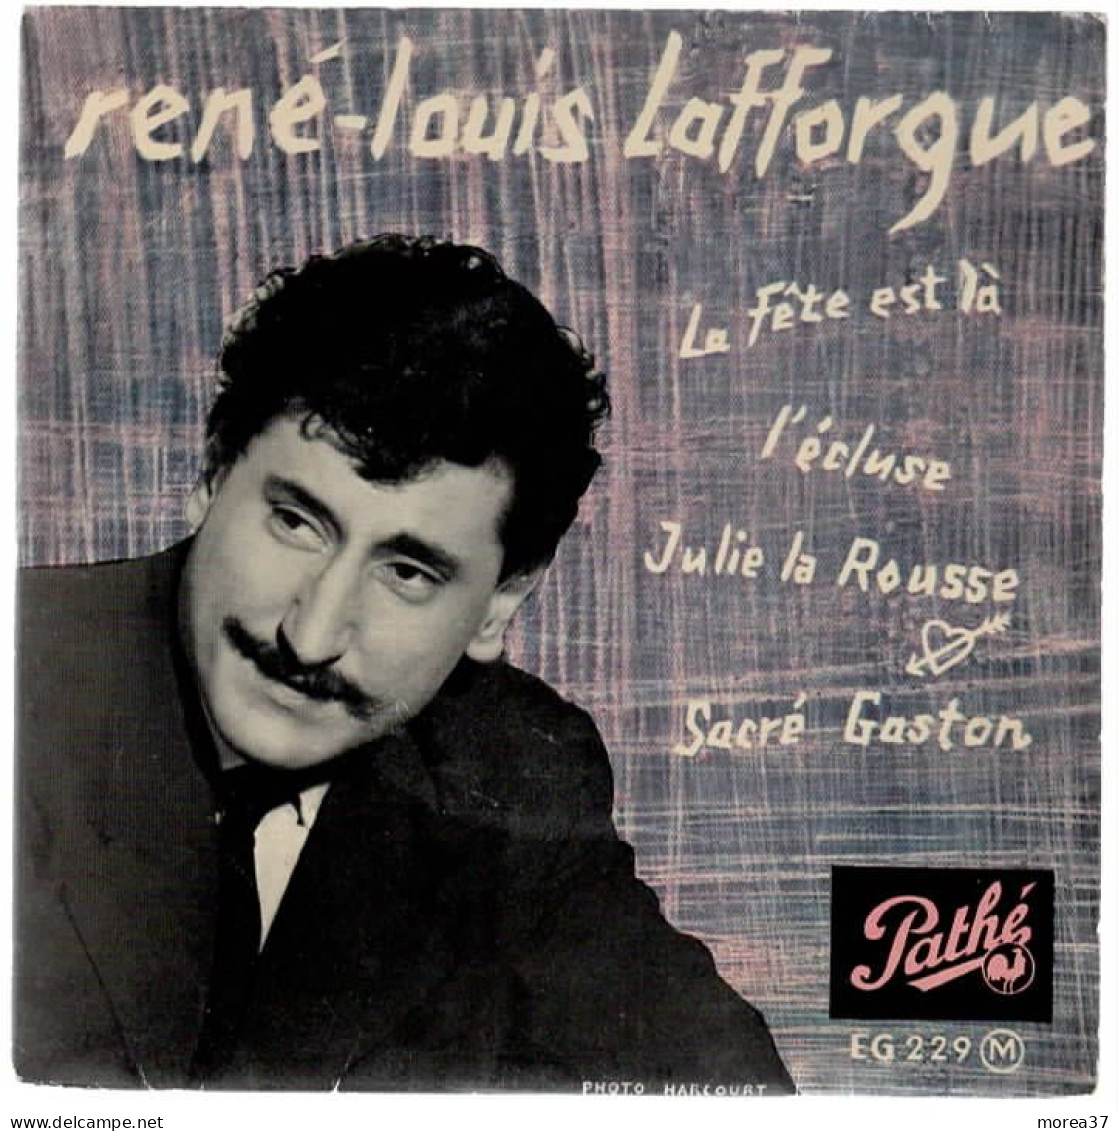 RENE LOUIS LAFFORGUE   La Fête Est La    PATHE EG 229 M - Otros - Canción Francesa